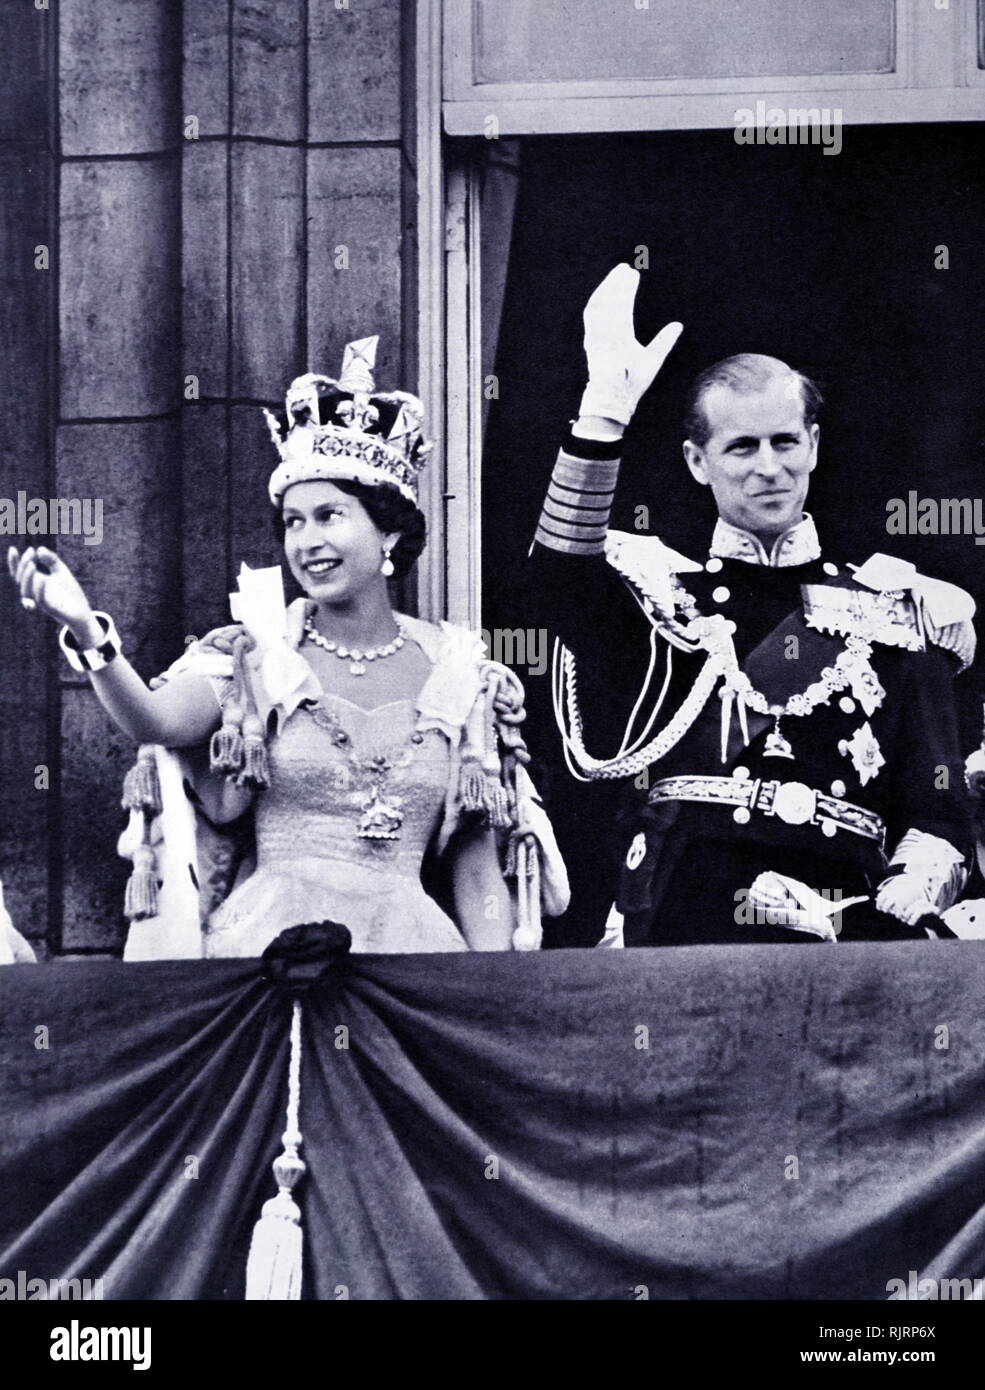 Le couronnement d'Elizabeth II du Royaume-Uni, a eu lieu le 2 juin 1953 à l'abbaye de Westminster, Londres. La reine Elizabeth II, avec le duc d'Édimbourg, à Buckingham Palace peu après leur retour de l'abbaye de Westminster Banque D'Images